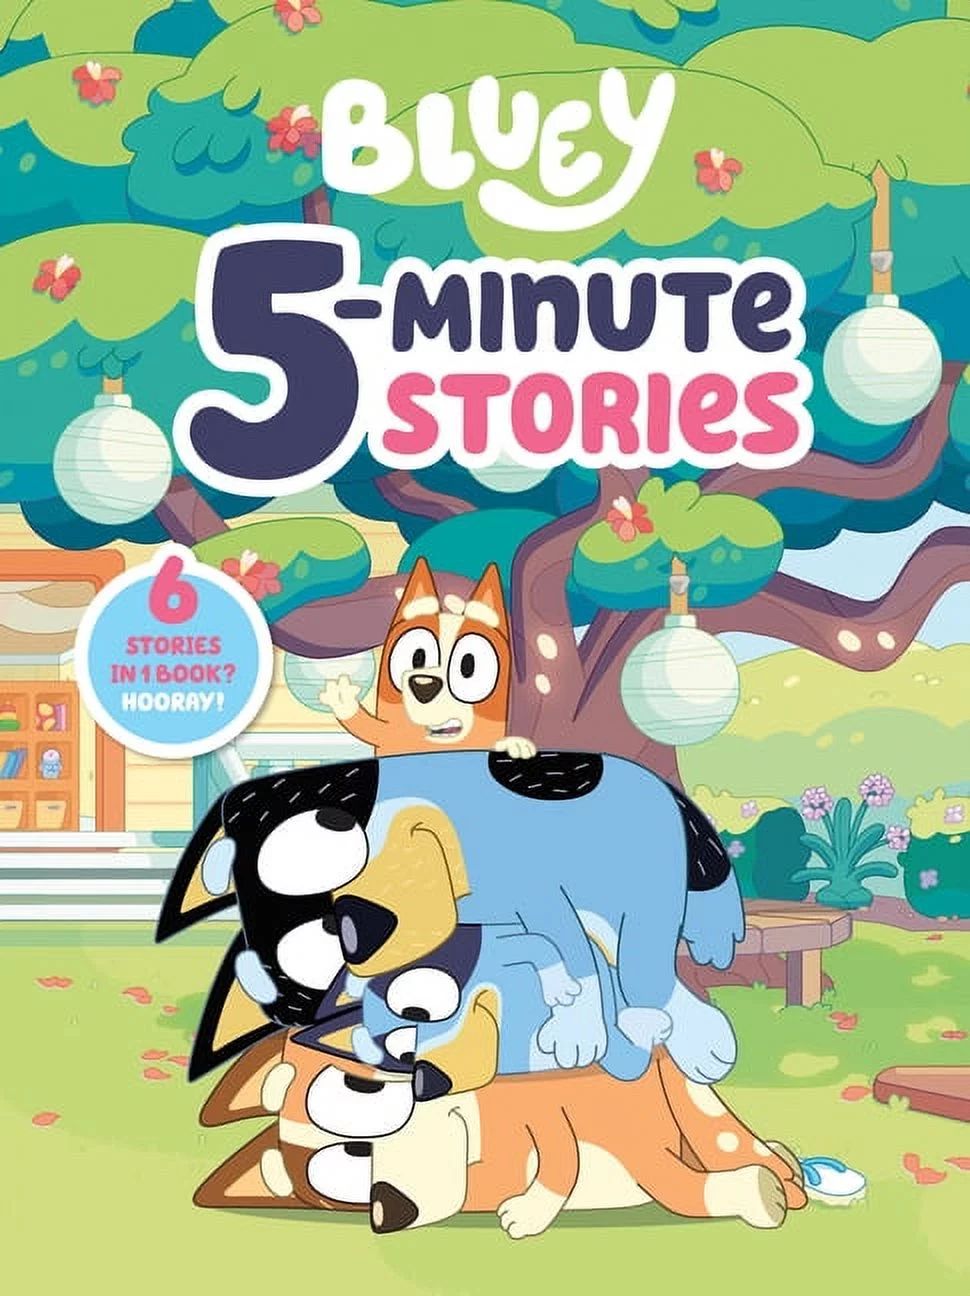 Bluey: Bluey 5-Minute Stories : 6 Stories in 1 Book? Hooray! (Hardcover) | Walmart (US)